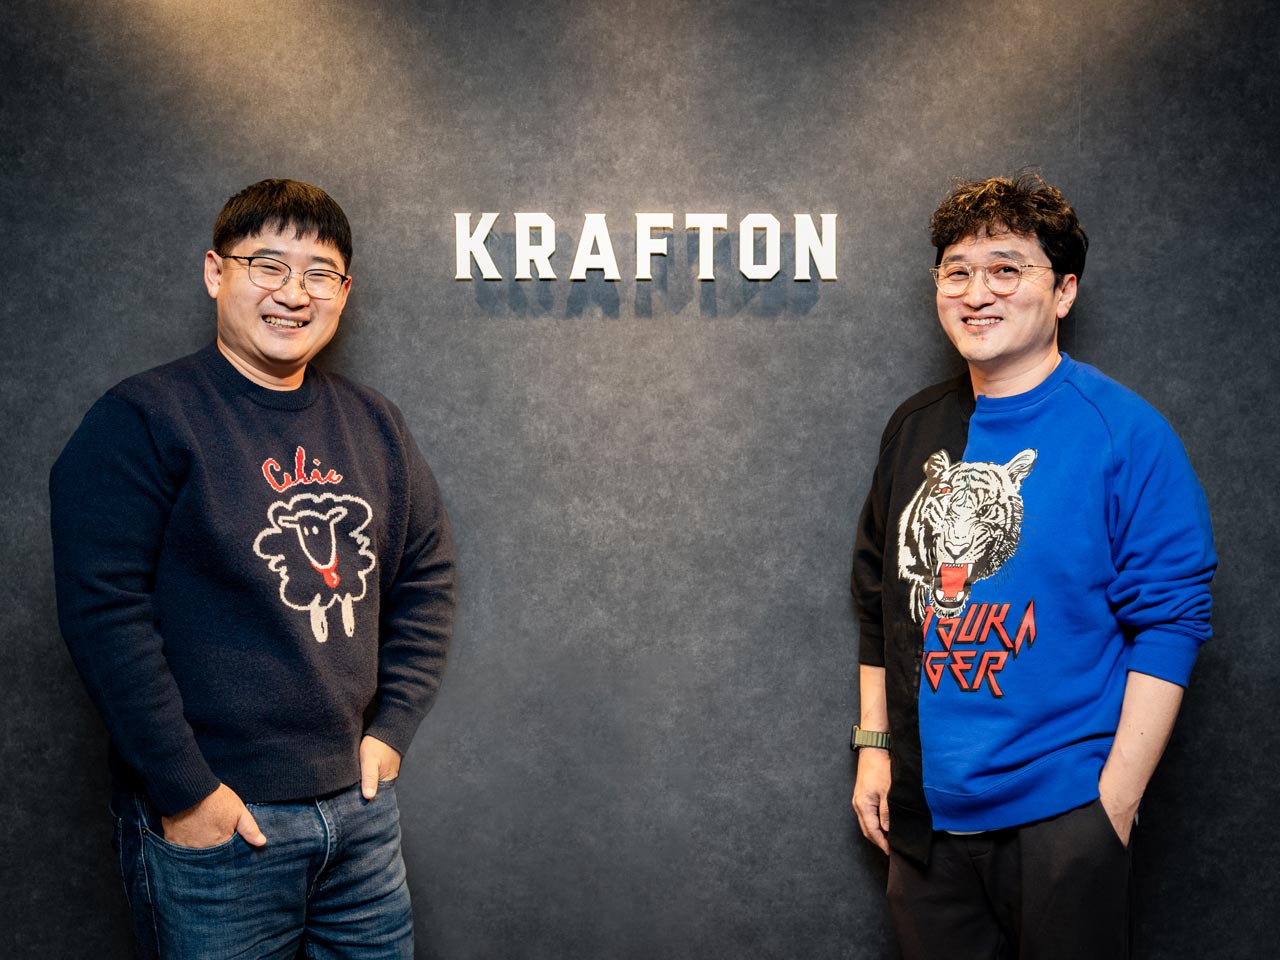 その環境に身を置いて、KRAFTONの発展、そして何よりも、ファンが喜ぶゲームの提供に力を尽くせる仲間を求めている。